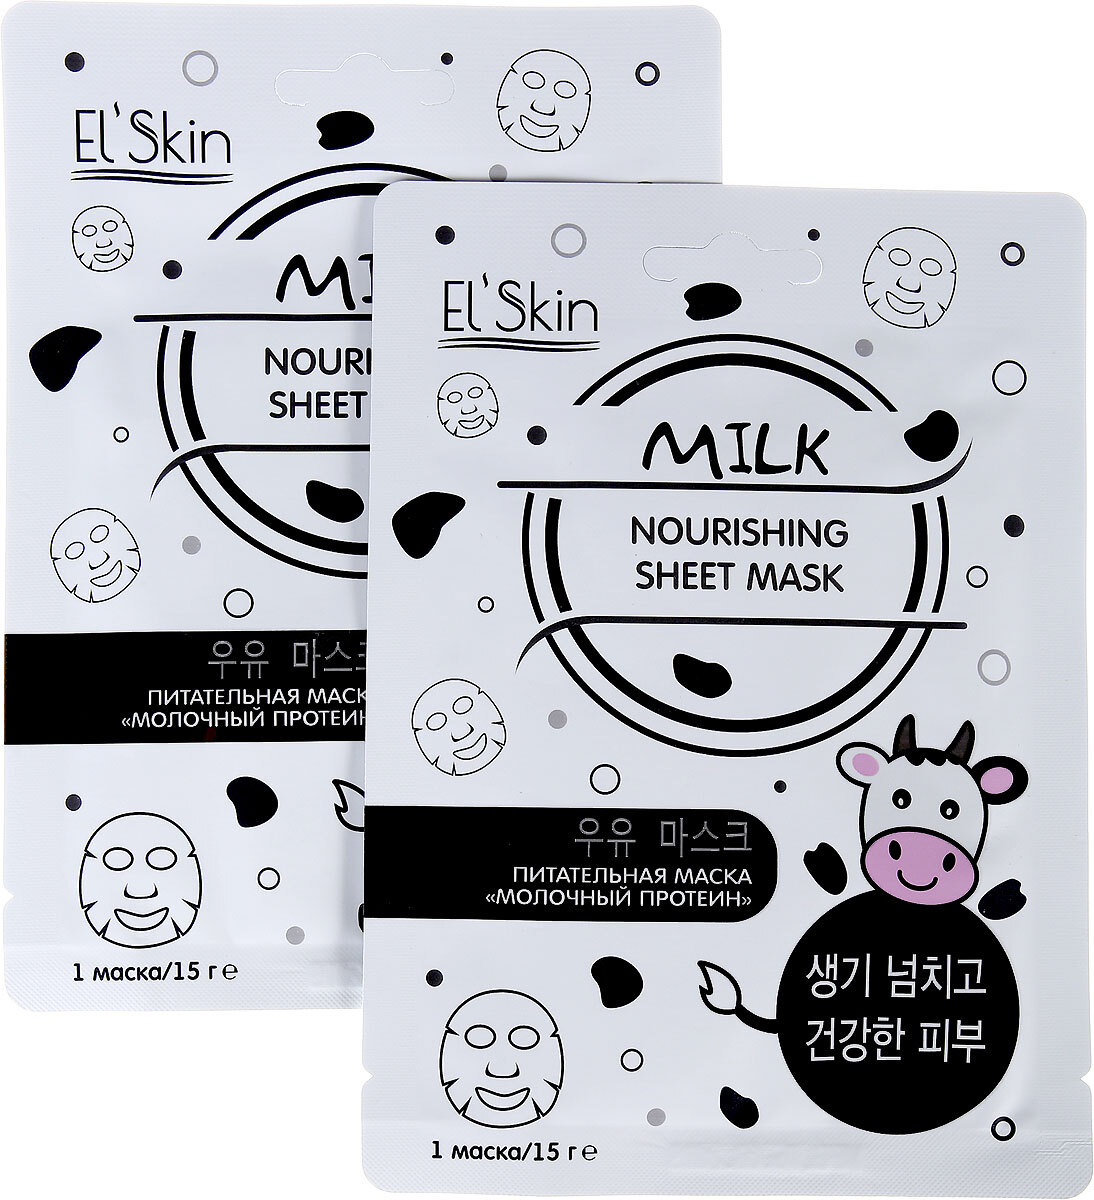 Питательная маска для волос на основе молочных протеинов